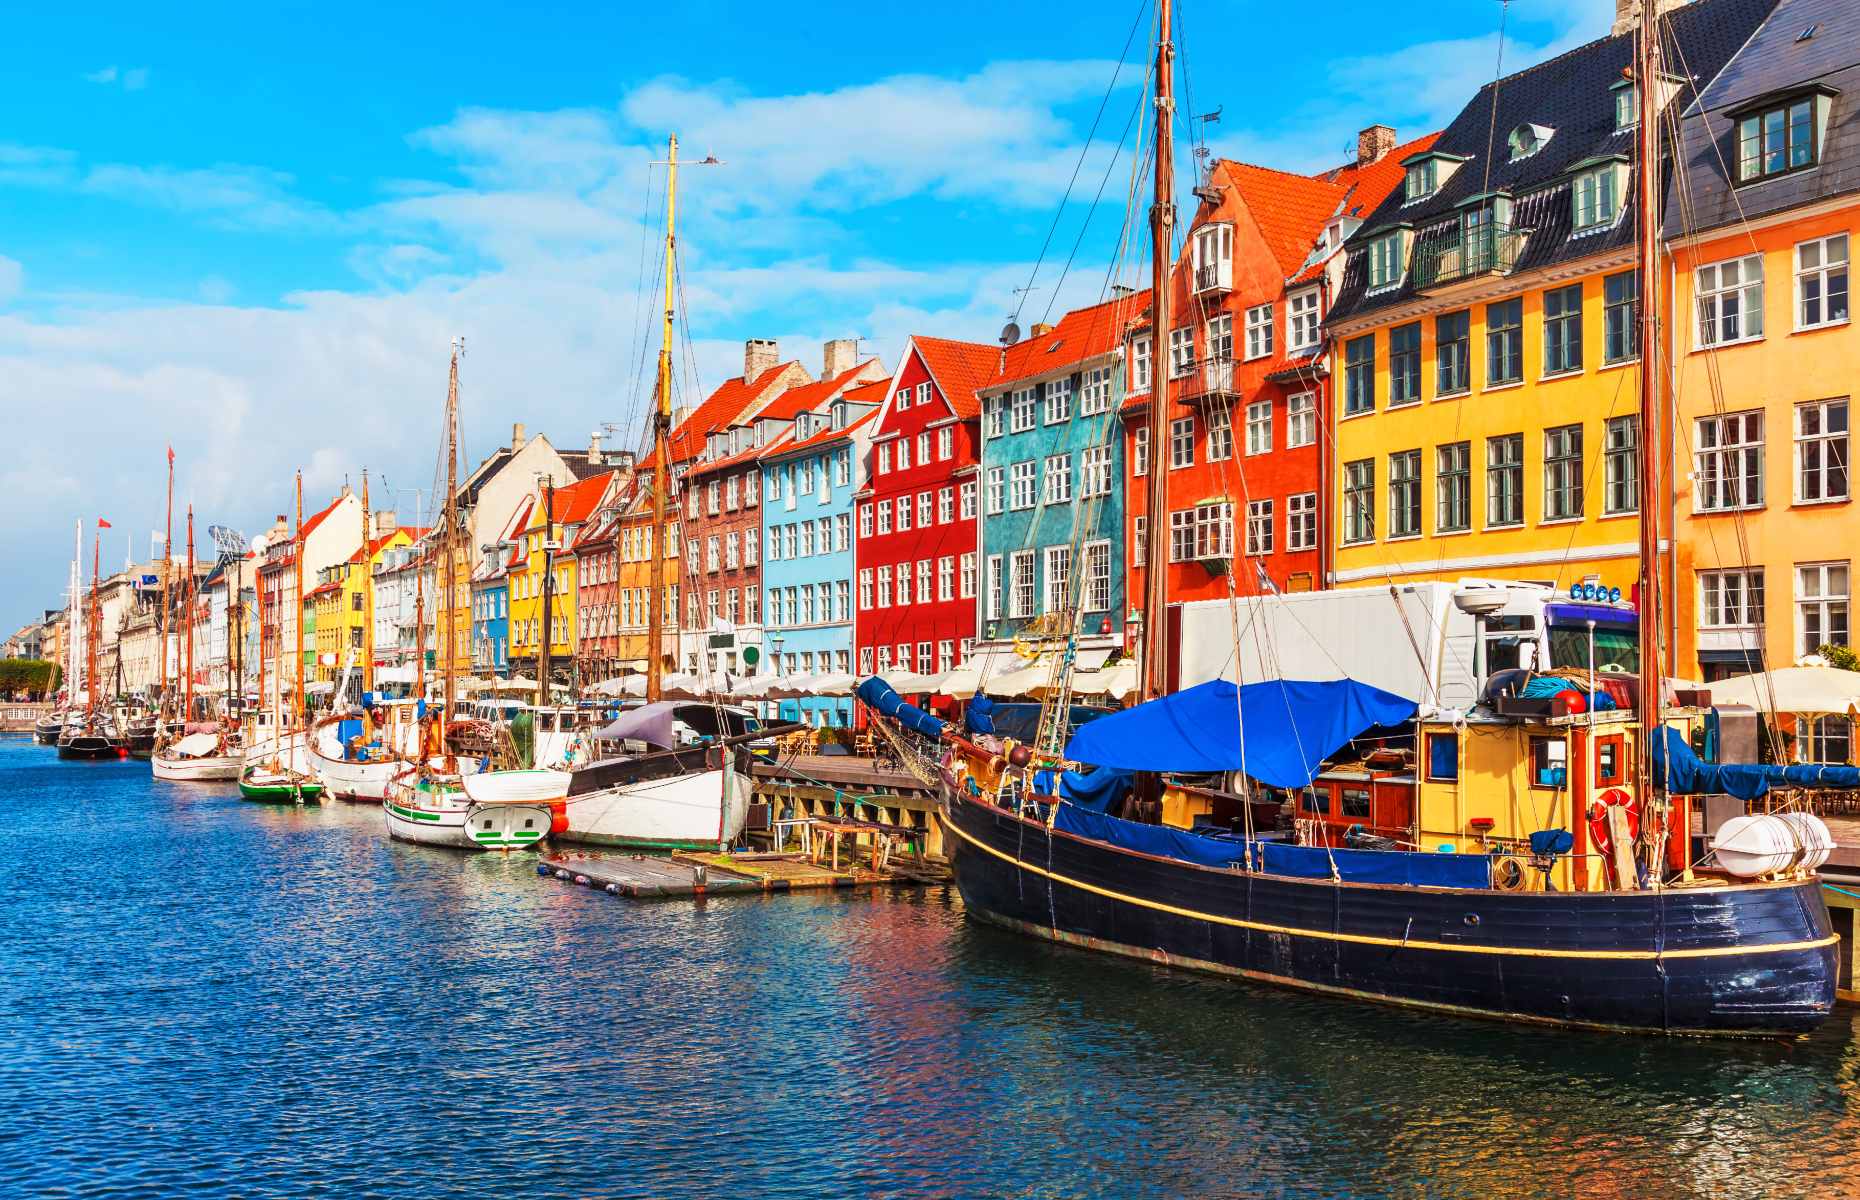 Nyhavn Harbour, Copenhagen, Denmark (Image: Oleksiy Mark/Shutterstock)